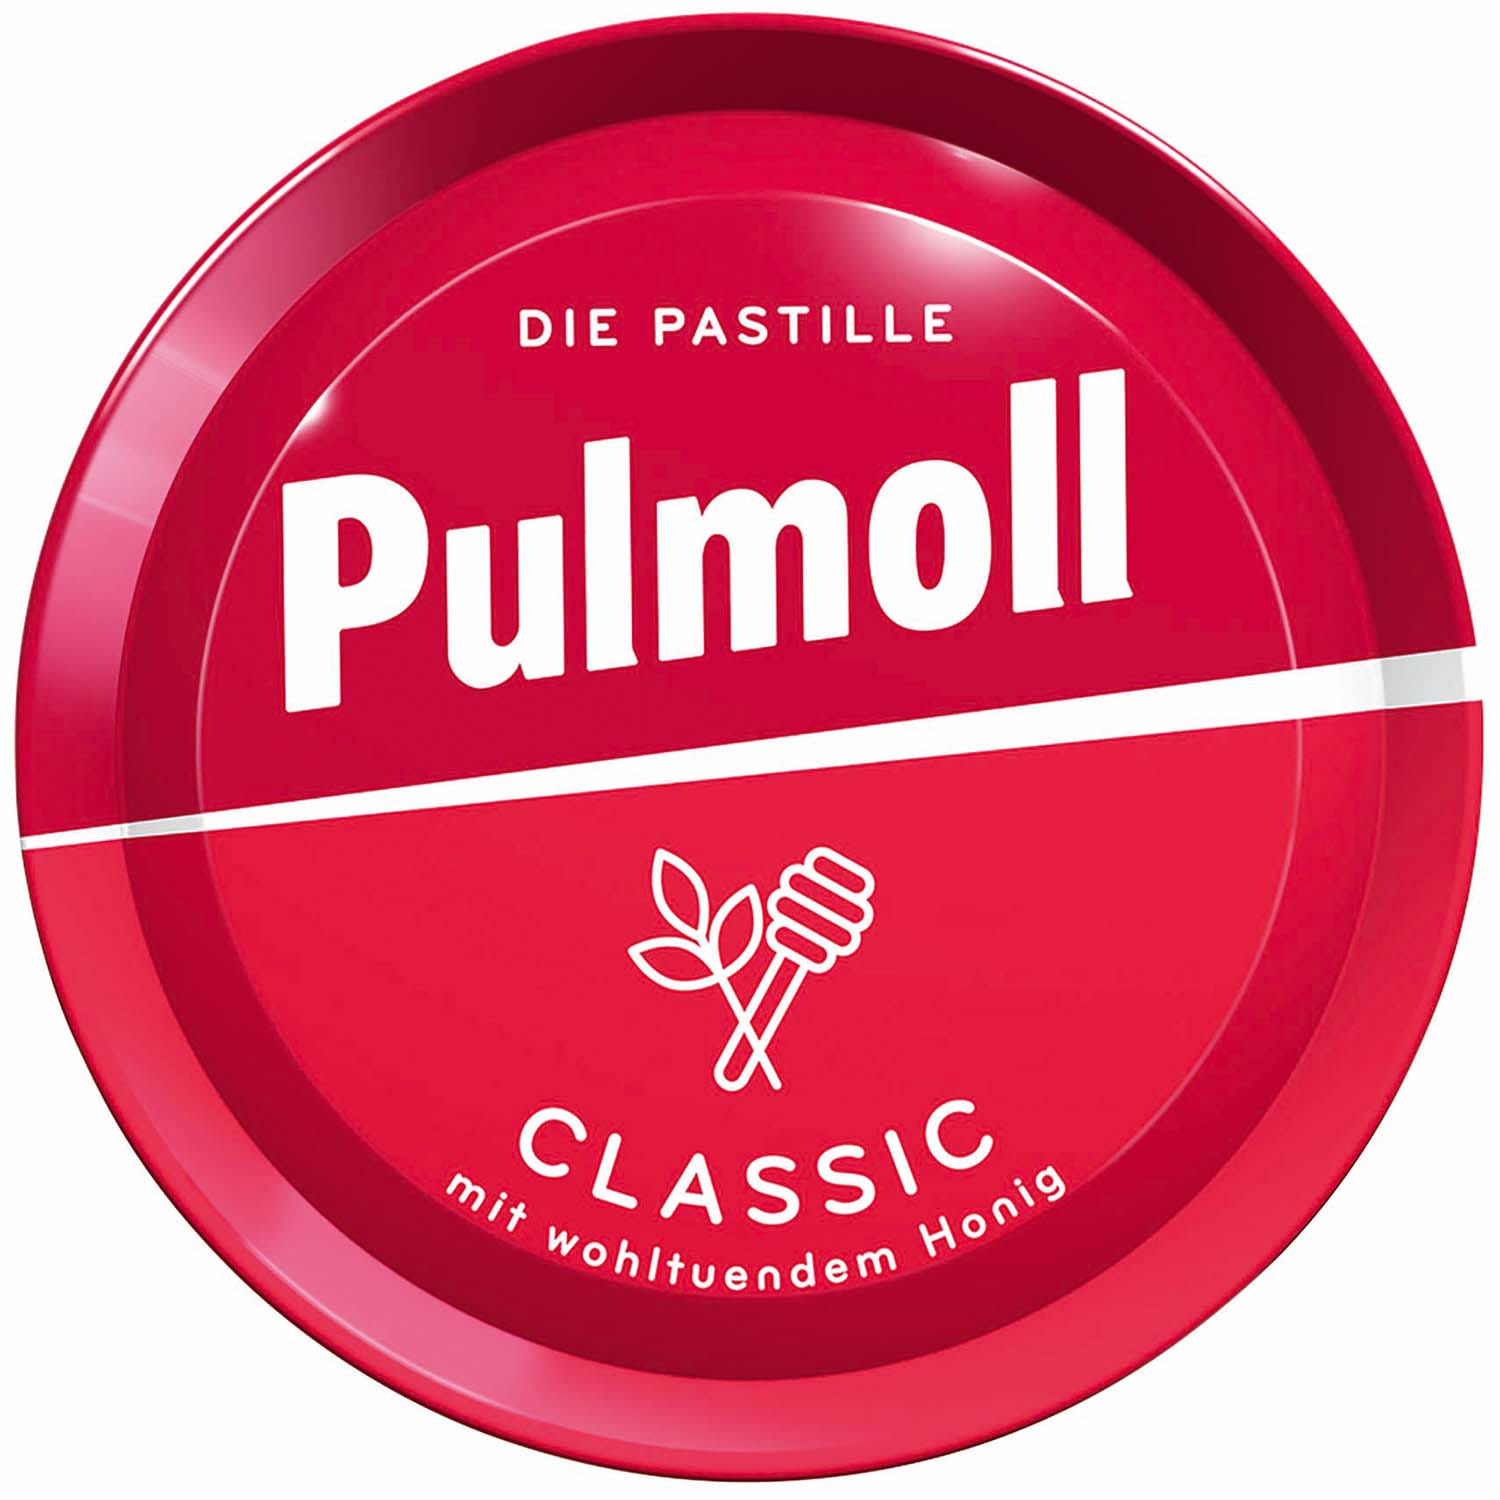 Pulmoll Classic pastilky s medem a mentolem 75g